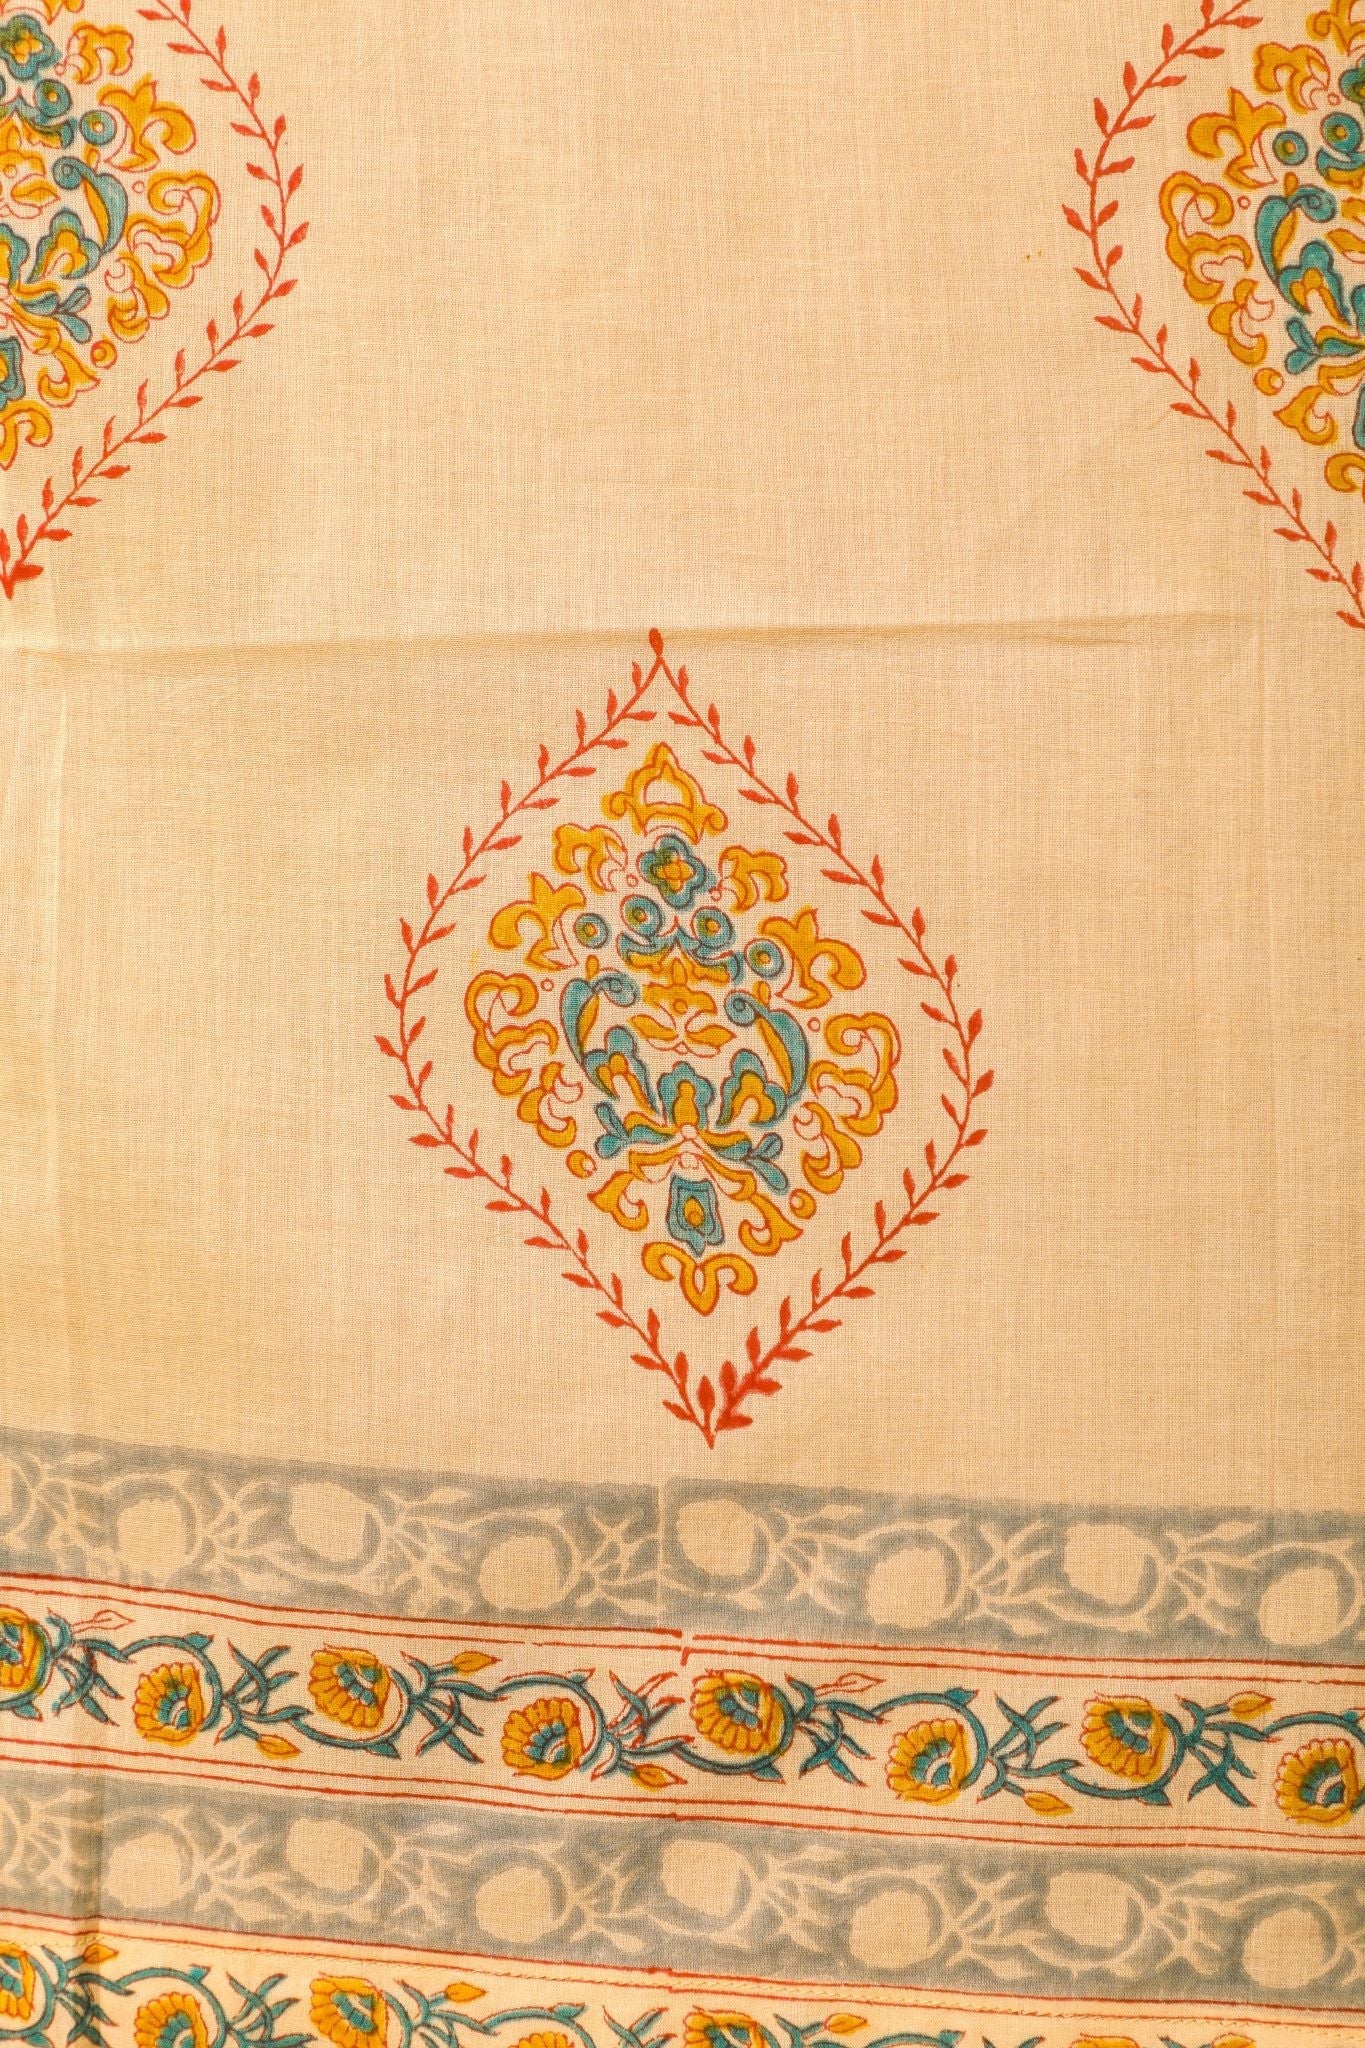 SootiSyahi 'Baileya Red' Handblock Printed Cotton Window Curtain - SootiSyahi